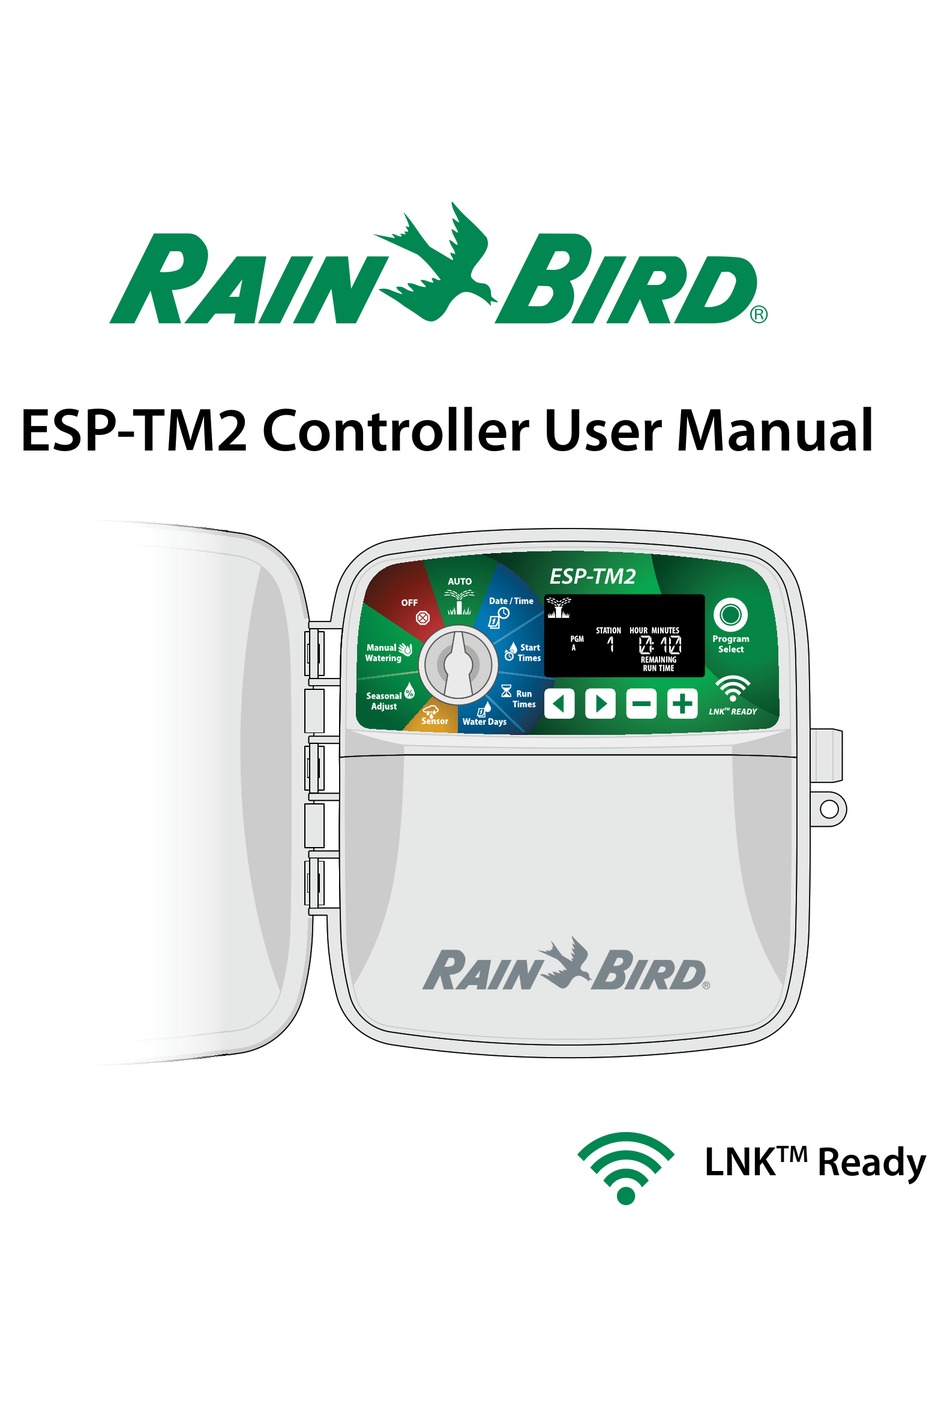 RAIN BIRD ESP-TM2 USER MANUAL Pdf Download | ManualsLib